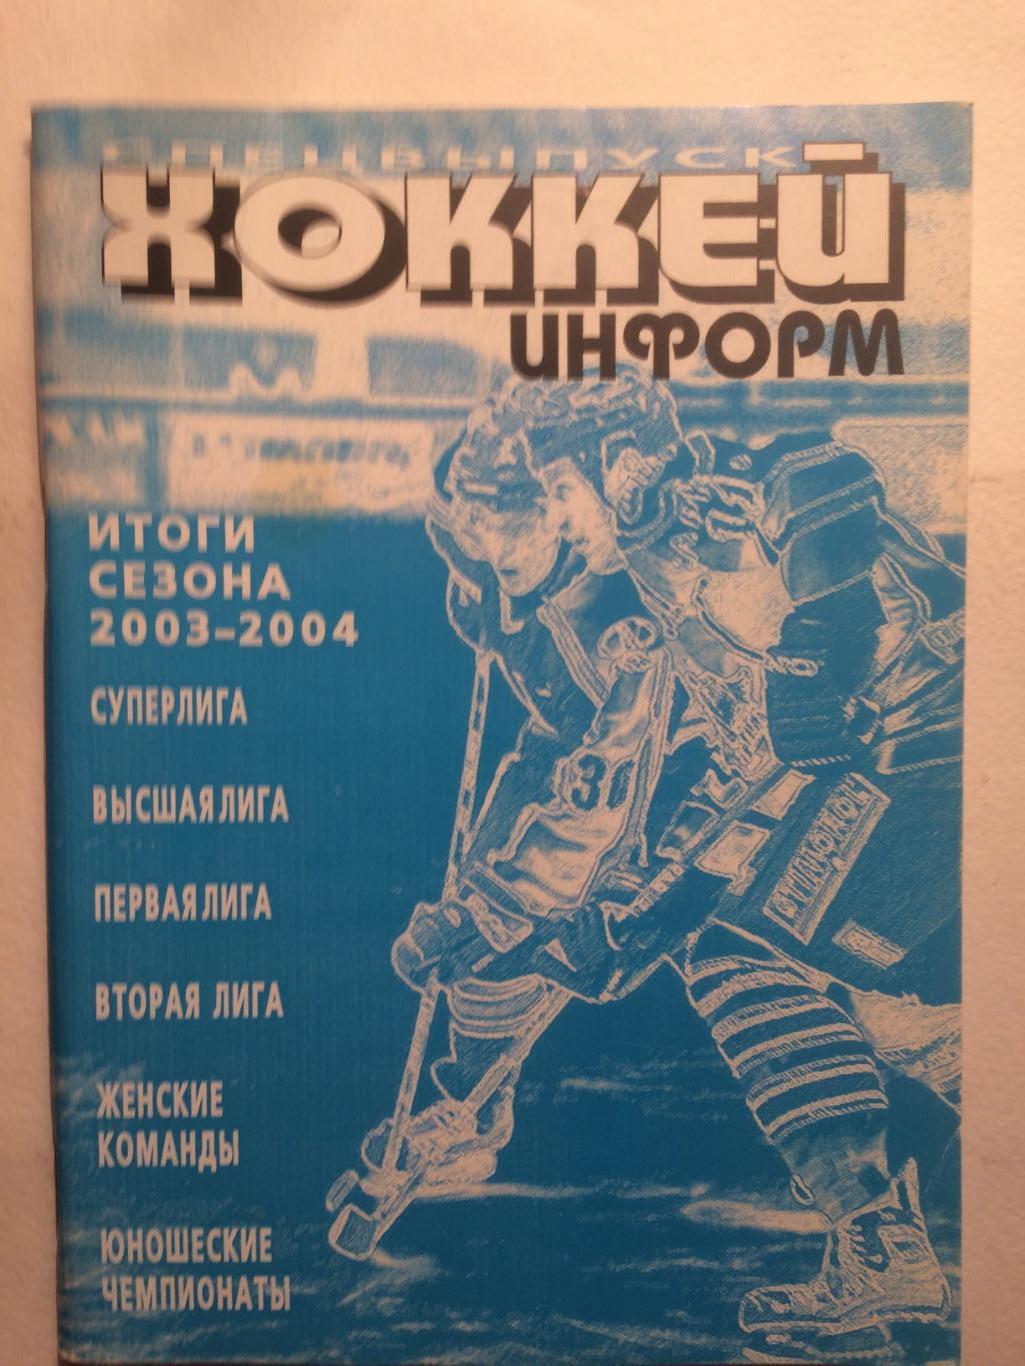 Хоккей справочник 2003-2004 итоги сезона (Хоккей информ)